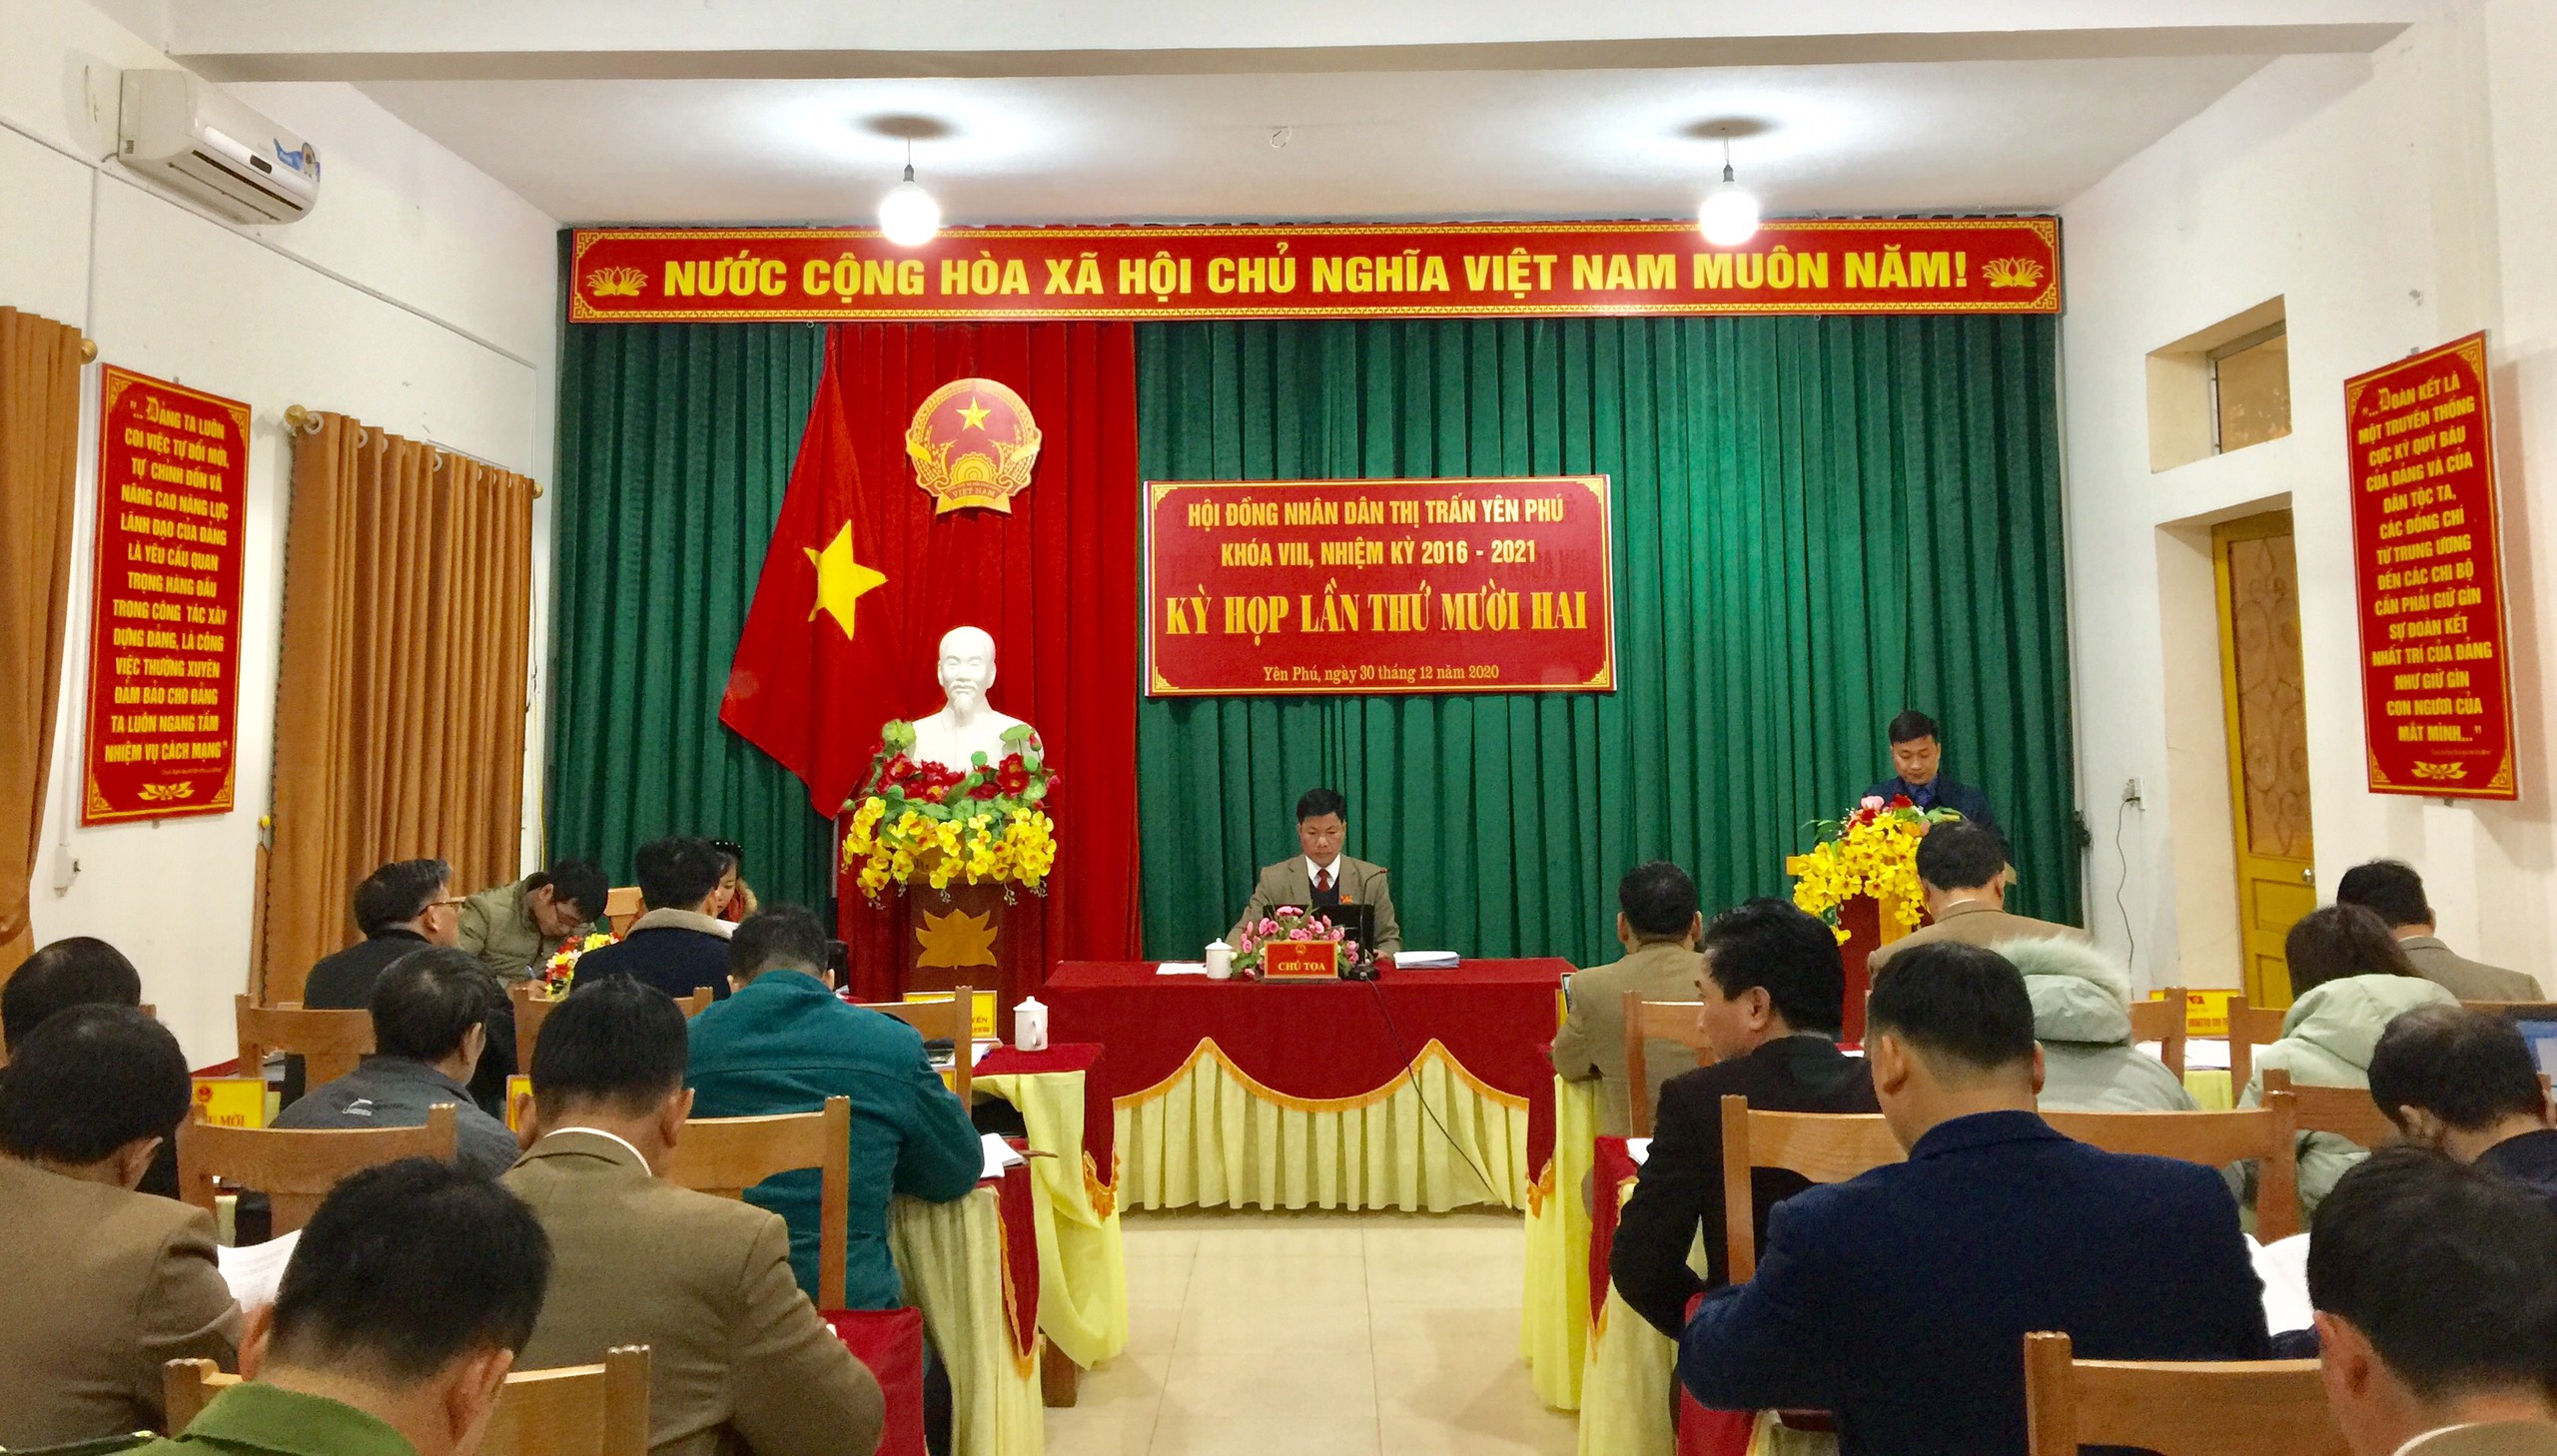 Kỳ họp thứ mười hai Hội đồng nhân dân thị trấn Yên Phú khóa VIII, nhiệm kỳ 2016 - 2021